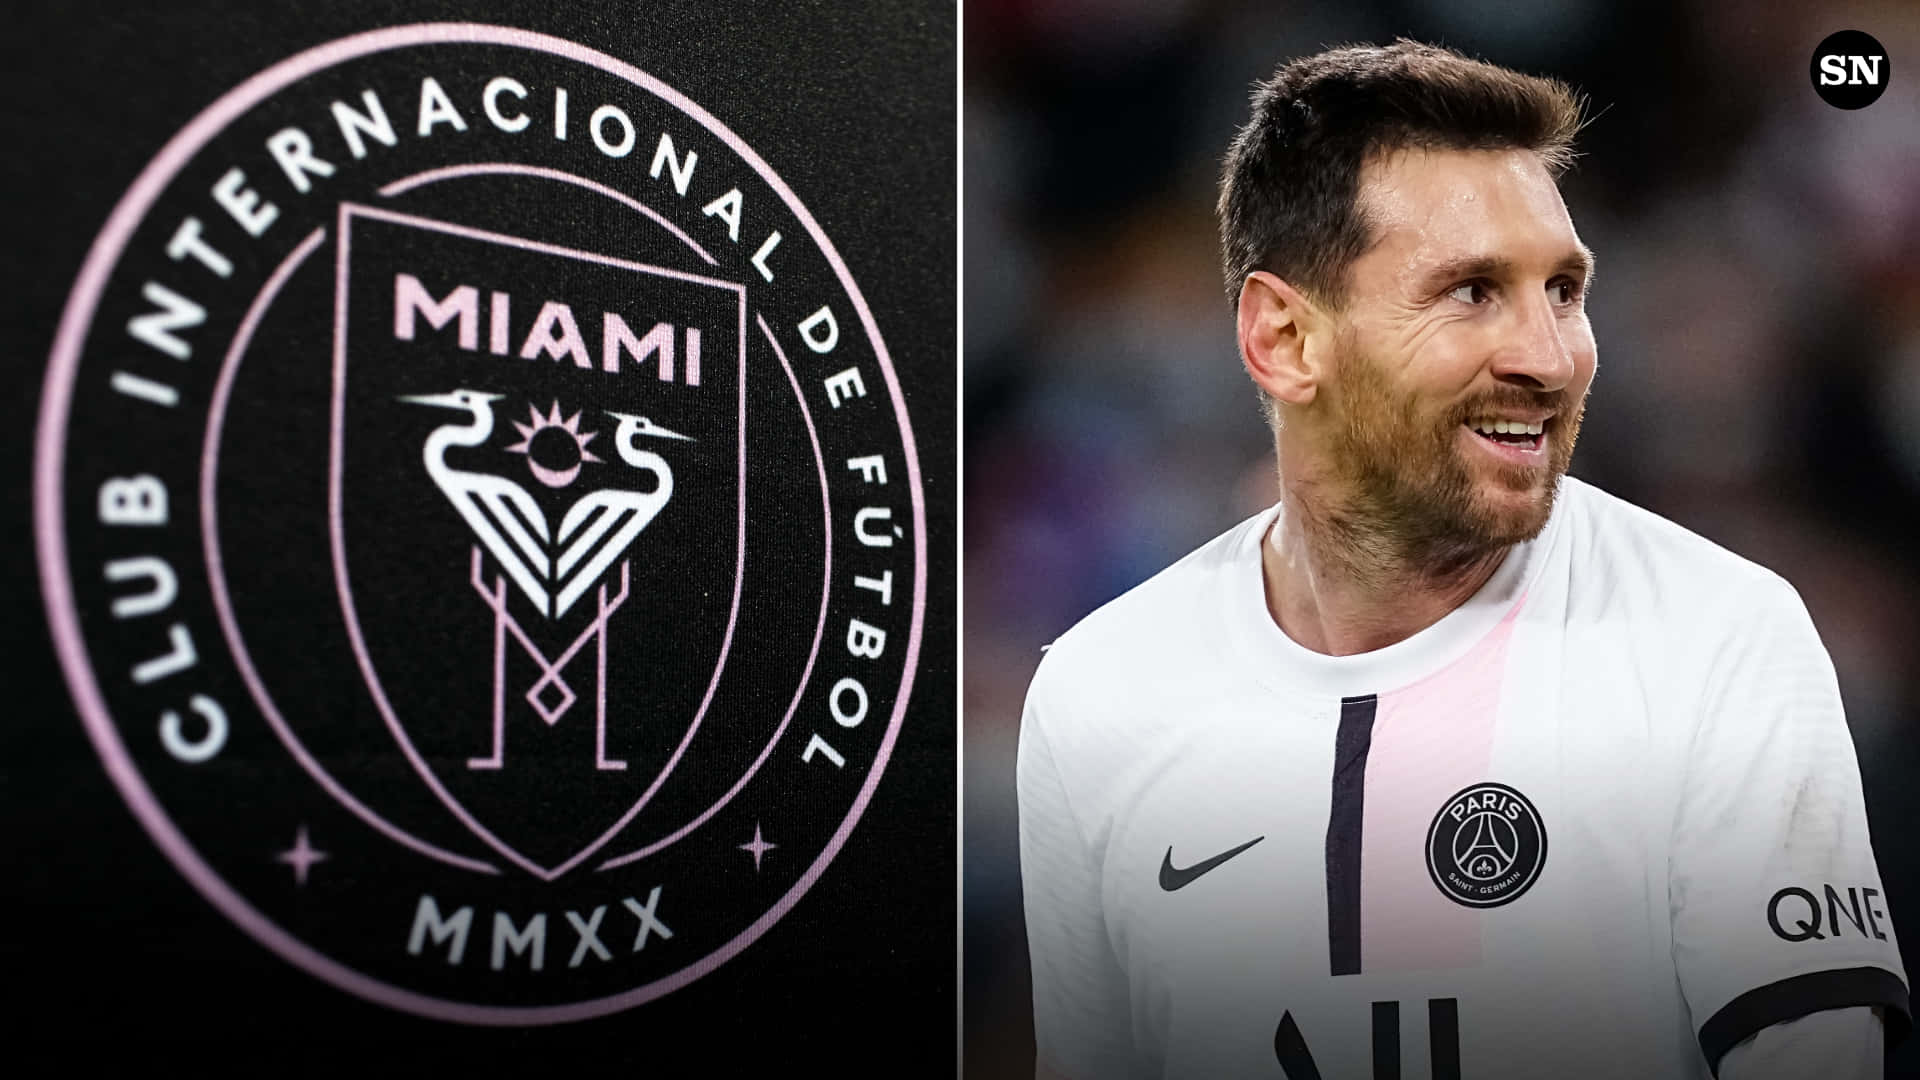 Intermiami Fc-logo Och Argentinska Fotbollsspelaren Lionel Messi. Wallpaper